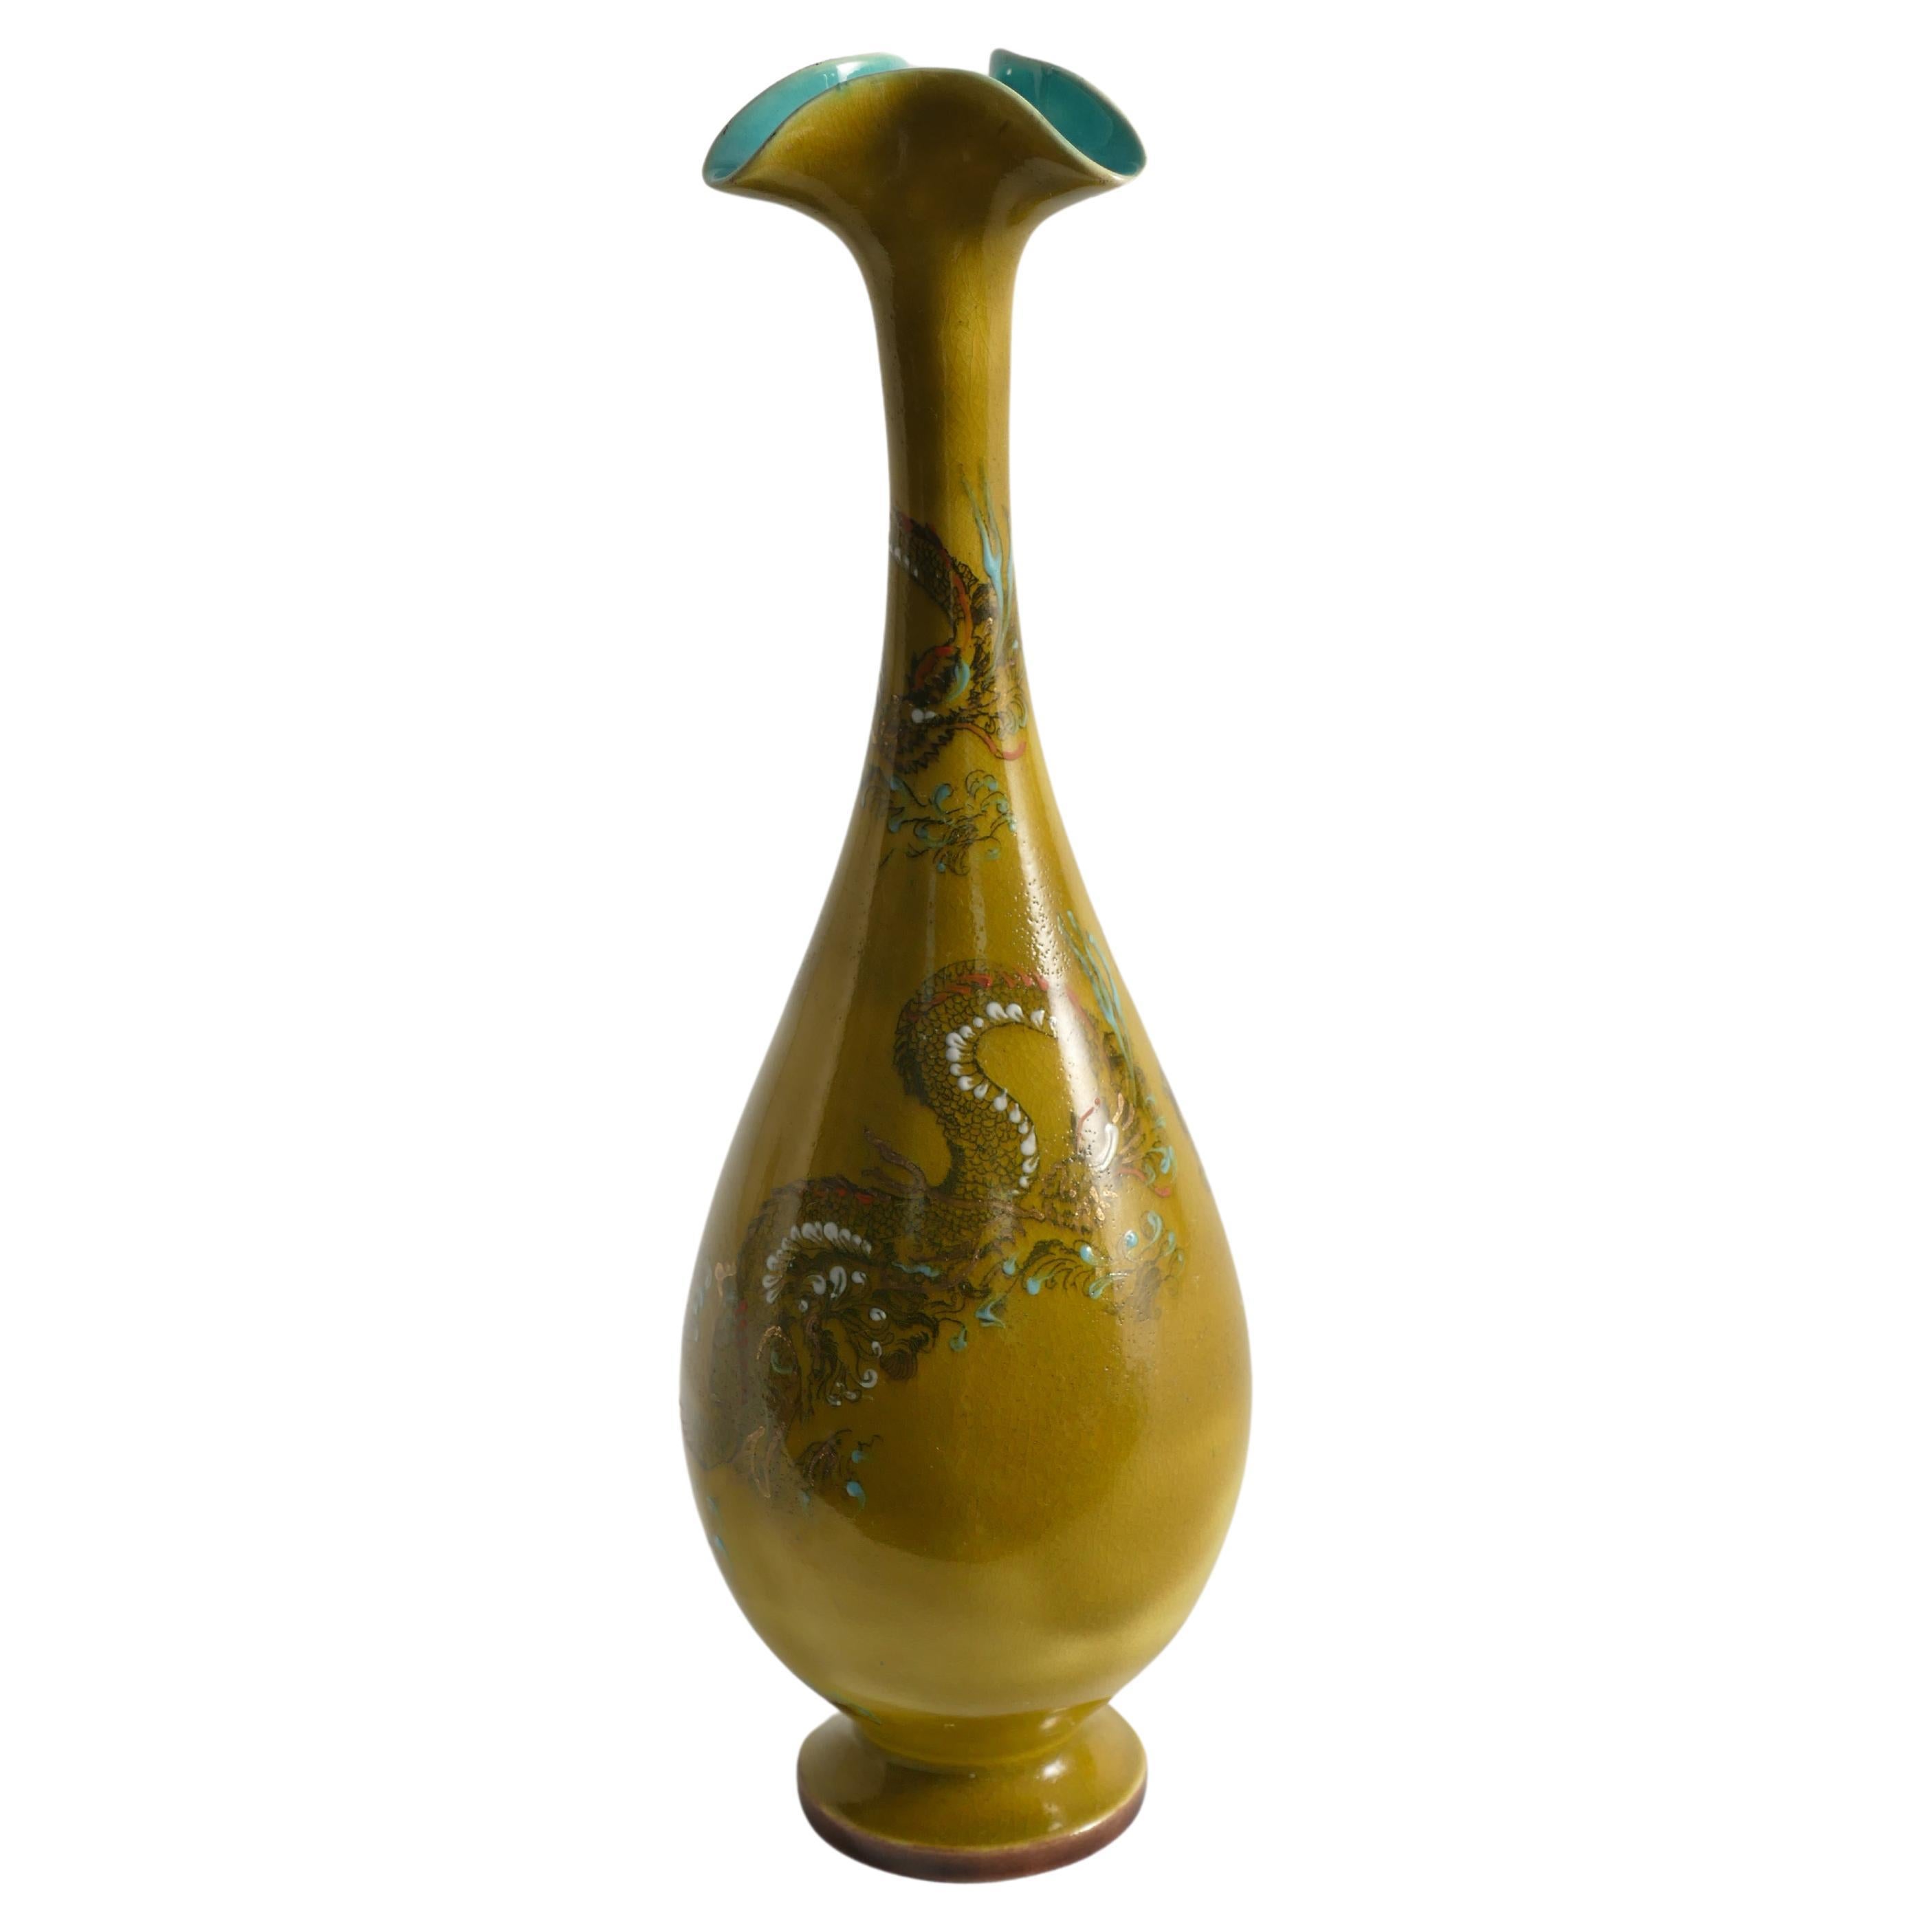 Elegamment orné d'un dragon en chinoiserie, ce vase en céramique ocre jaune de Lambeth Doulton Faience exsude un charme intemporel et un savoir-faire artisanal exquis. Deux dragons méticuleusement peints ornent la surface, chaque échelle étant